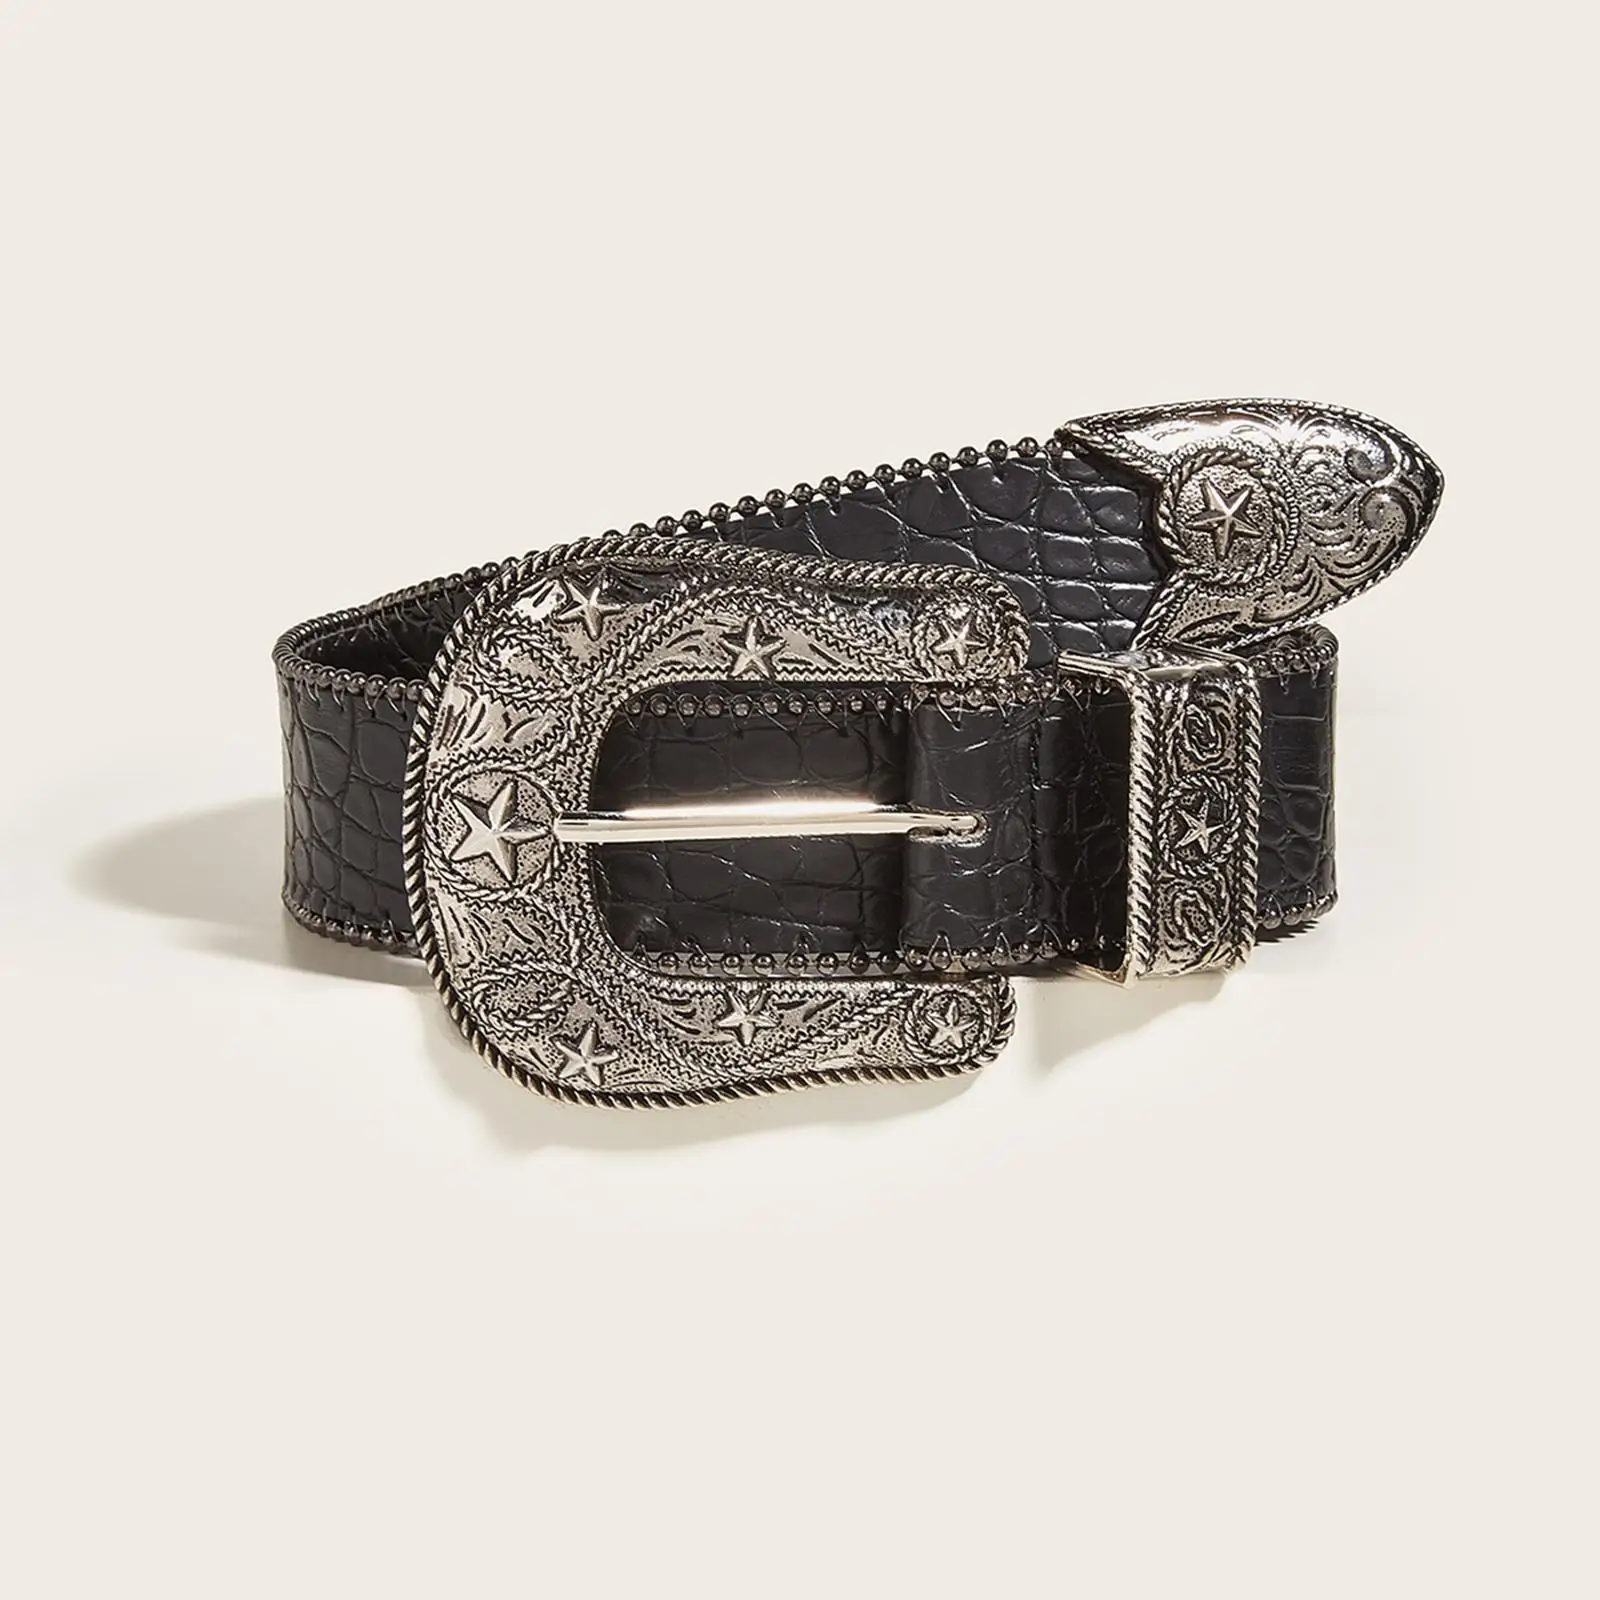 Women Buckle Belt Leather Belt Strap Casual Belt Adjustable Belt Waist Strap Waist Belt for Lovers Friends Lady Gifts